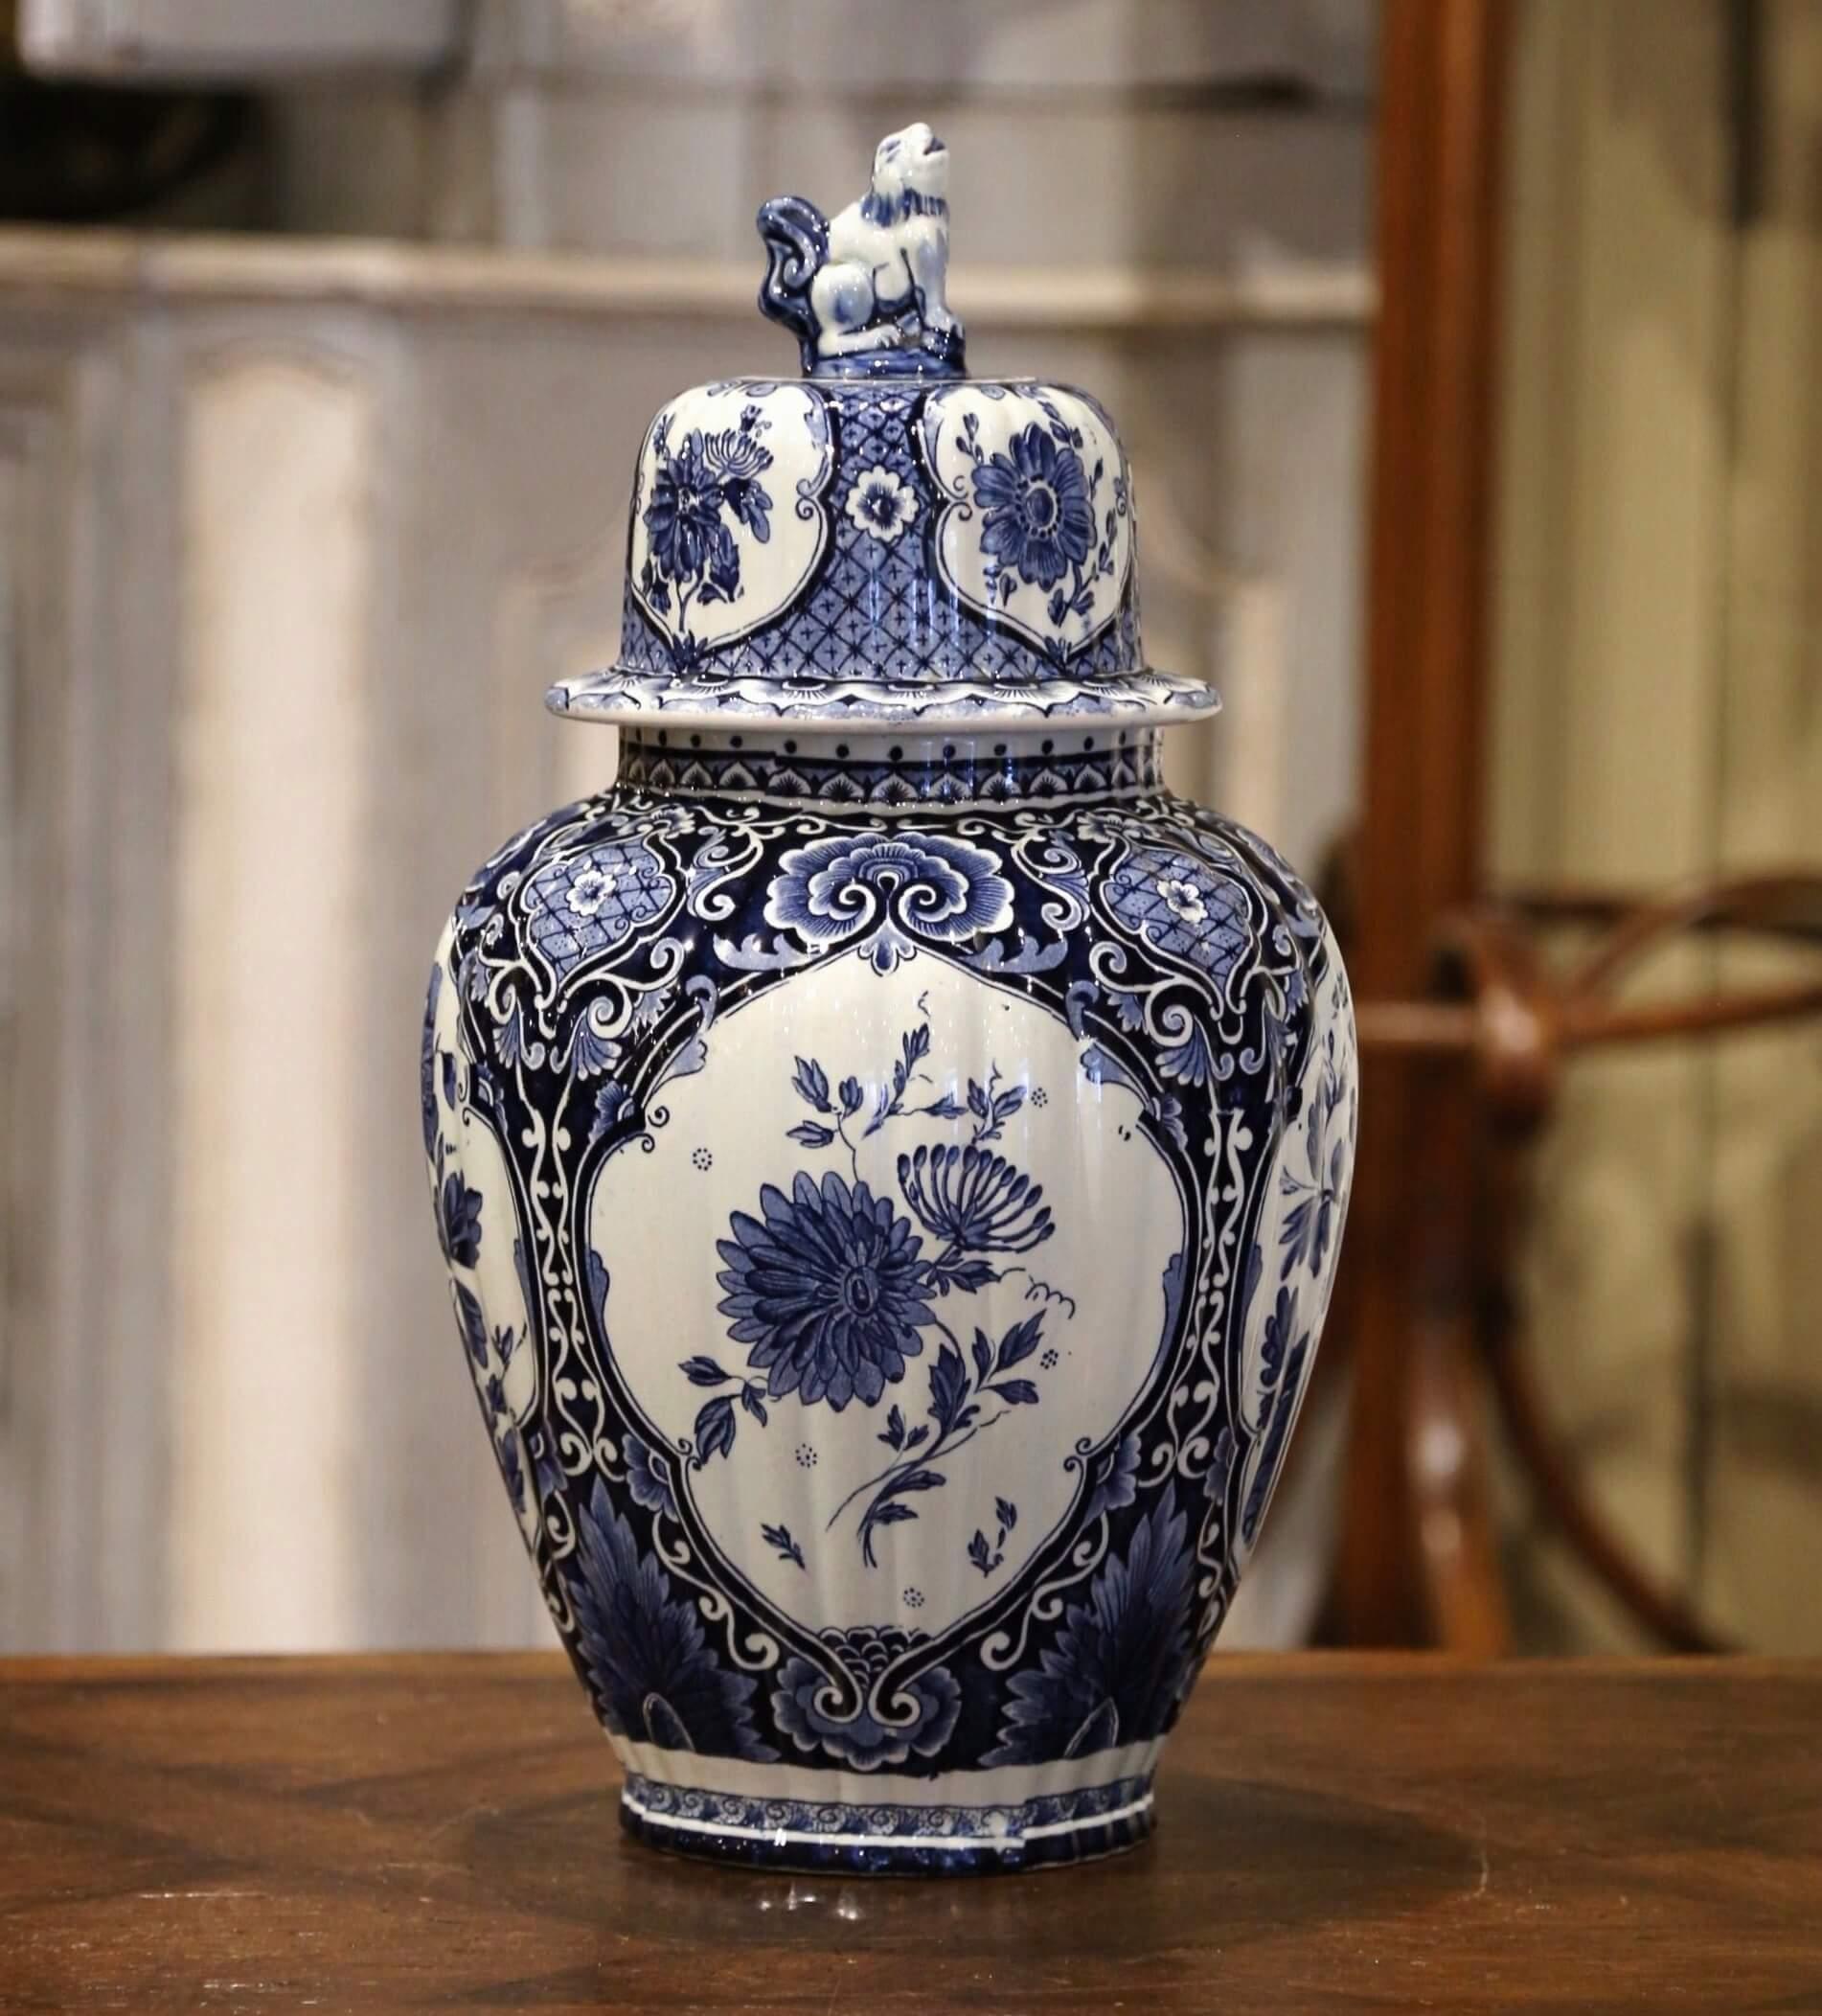 Fabriqué en Hollande, vers 1950, ce grand potiche en faïence présente des médaillons peints à la main avec un décor hollandais classique de fleurs et de feuillages. La jarre traditionnelle bleue et blanche est de forme ronde et possède un couvercle